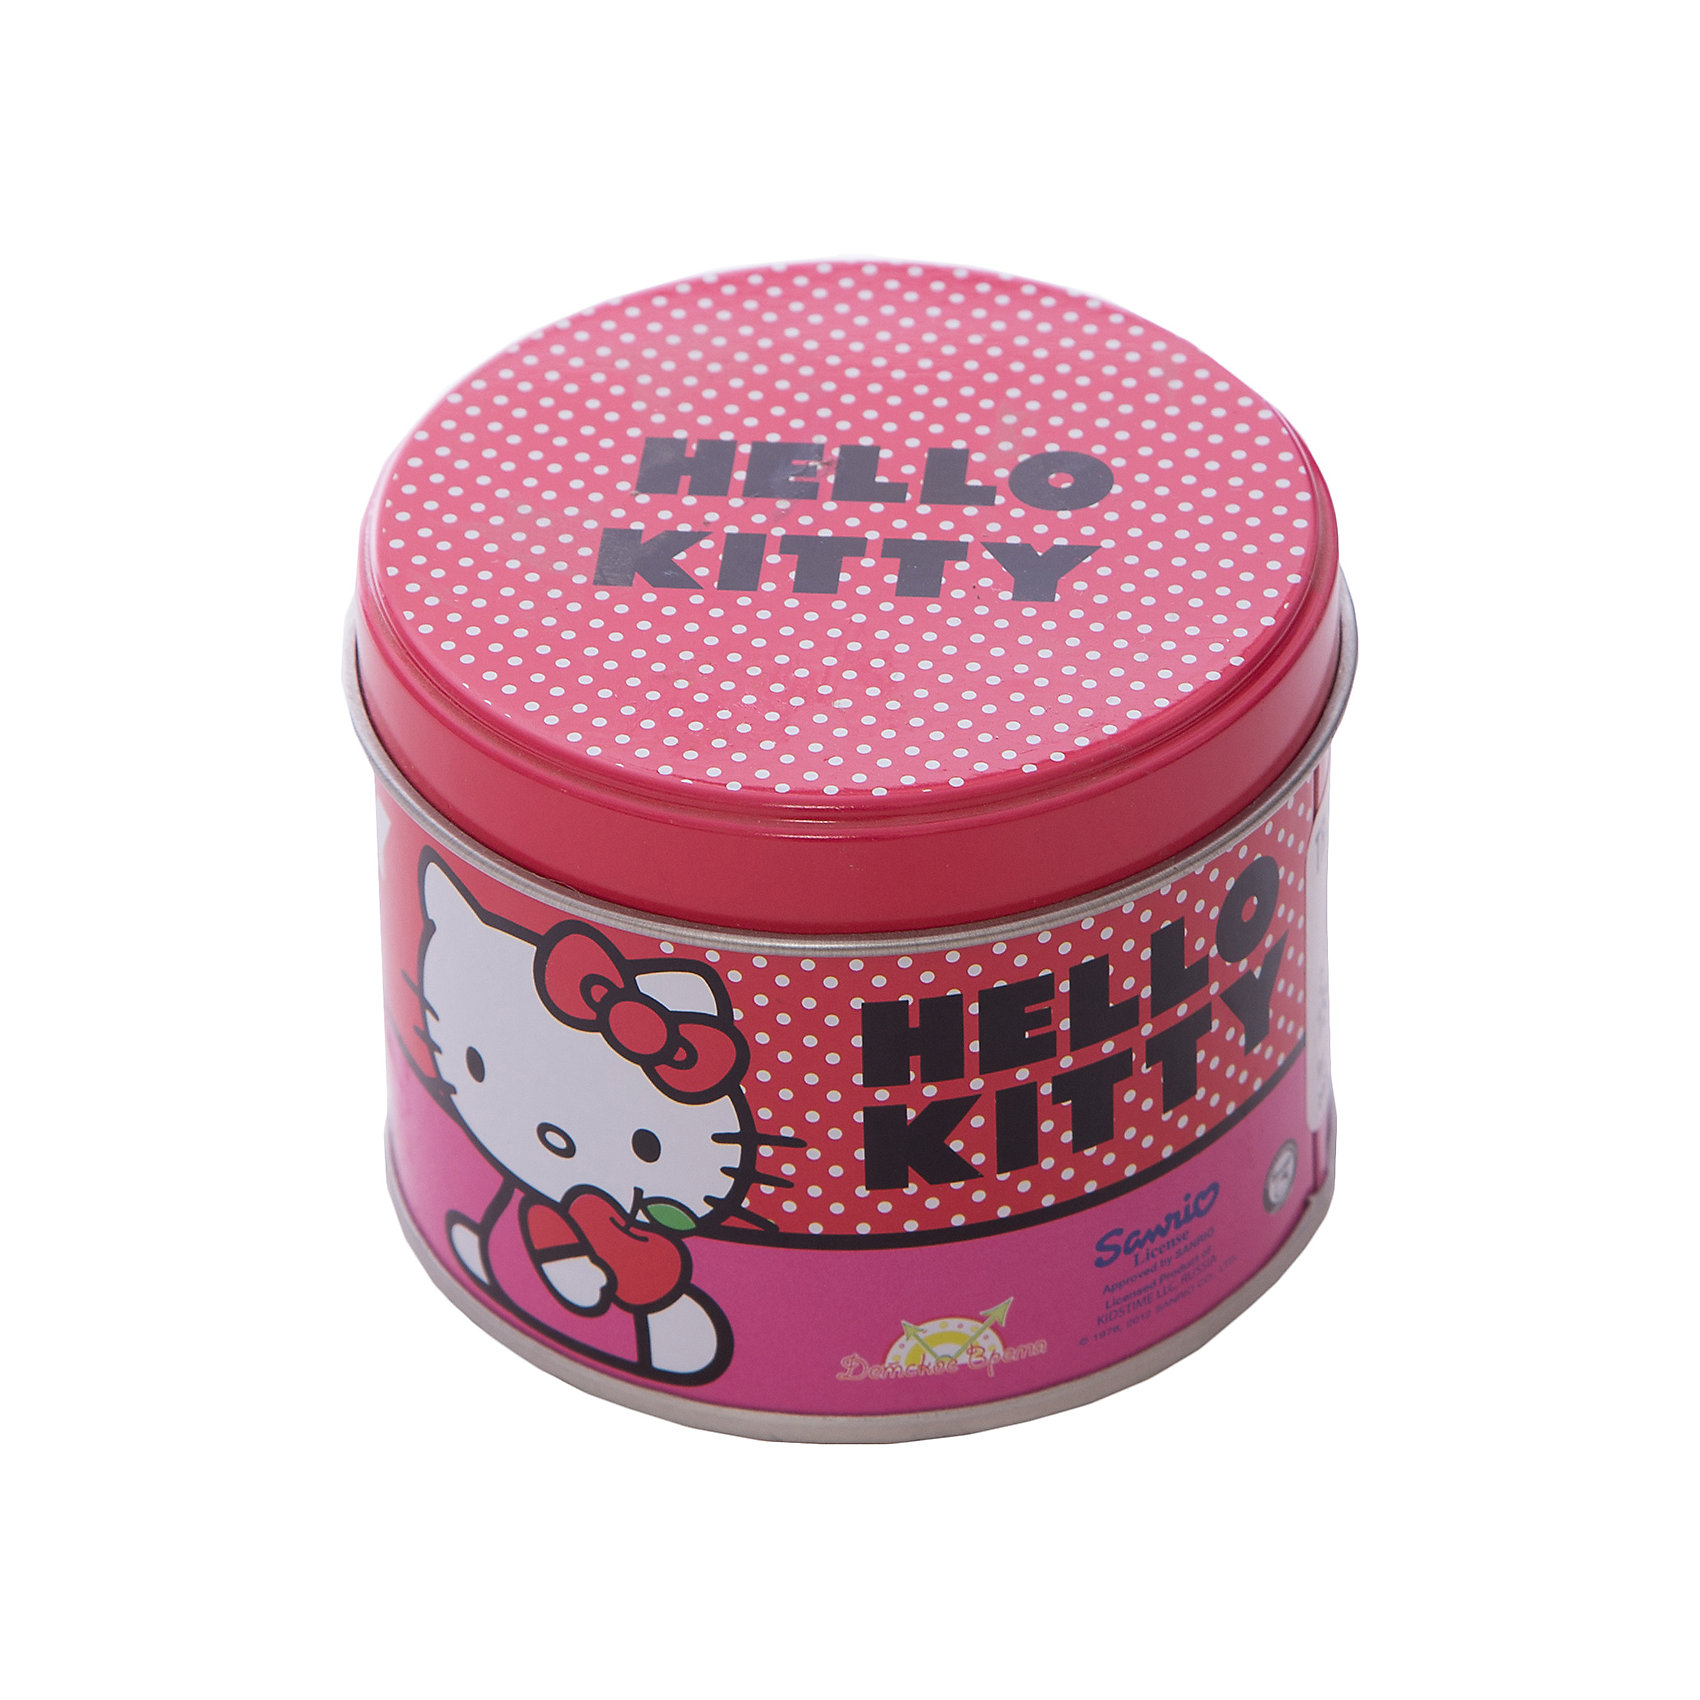 фото Часы наручные аналоговые, Hello Kitty -